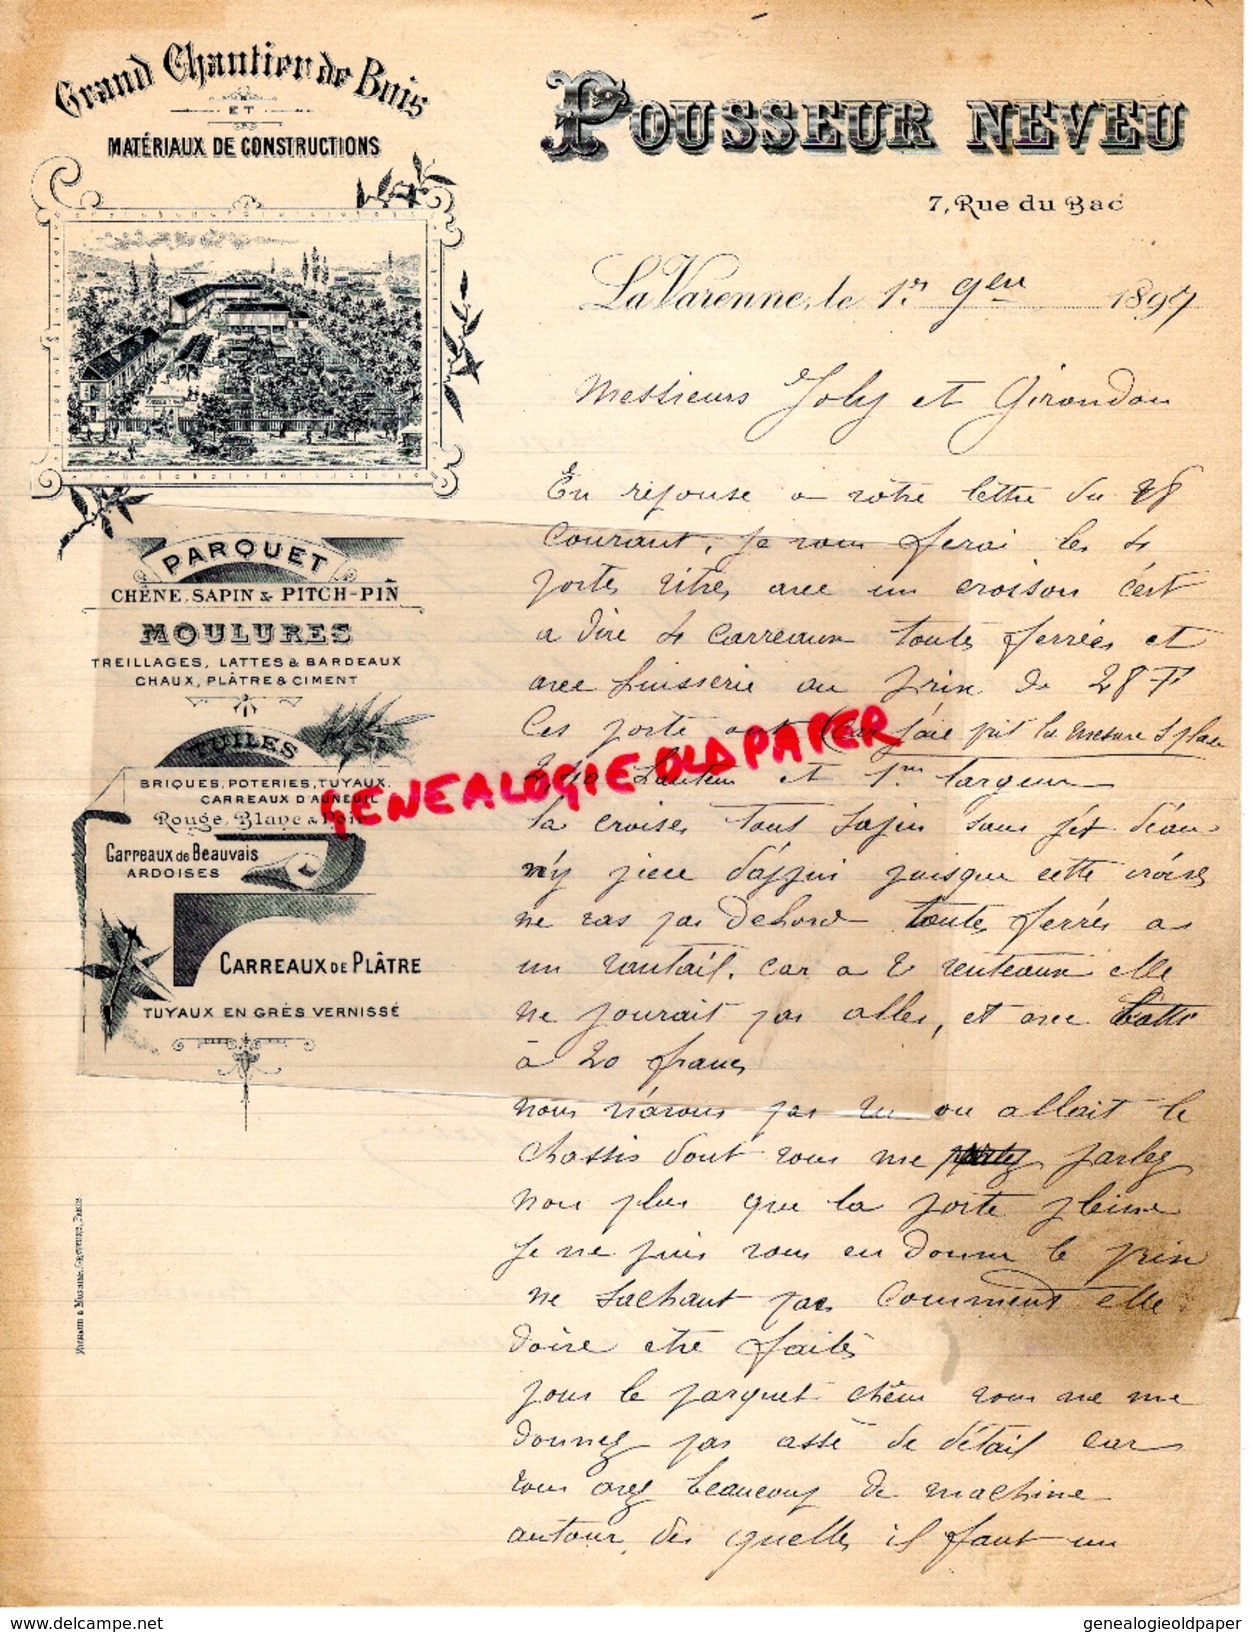 49- LA VARENNE- LETTRE MANUSCRITE SIGNEE POUSSEUR NEVEU- GRAND CHANTIER DE BOIS-SCIERIE- 7 RUE DU BAC- 1897 - Petits Métiers